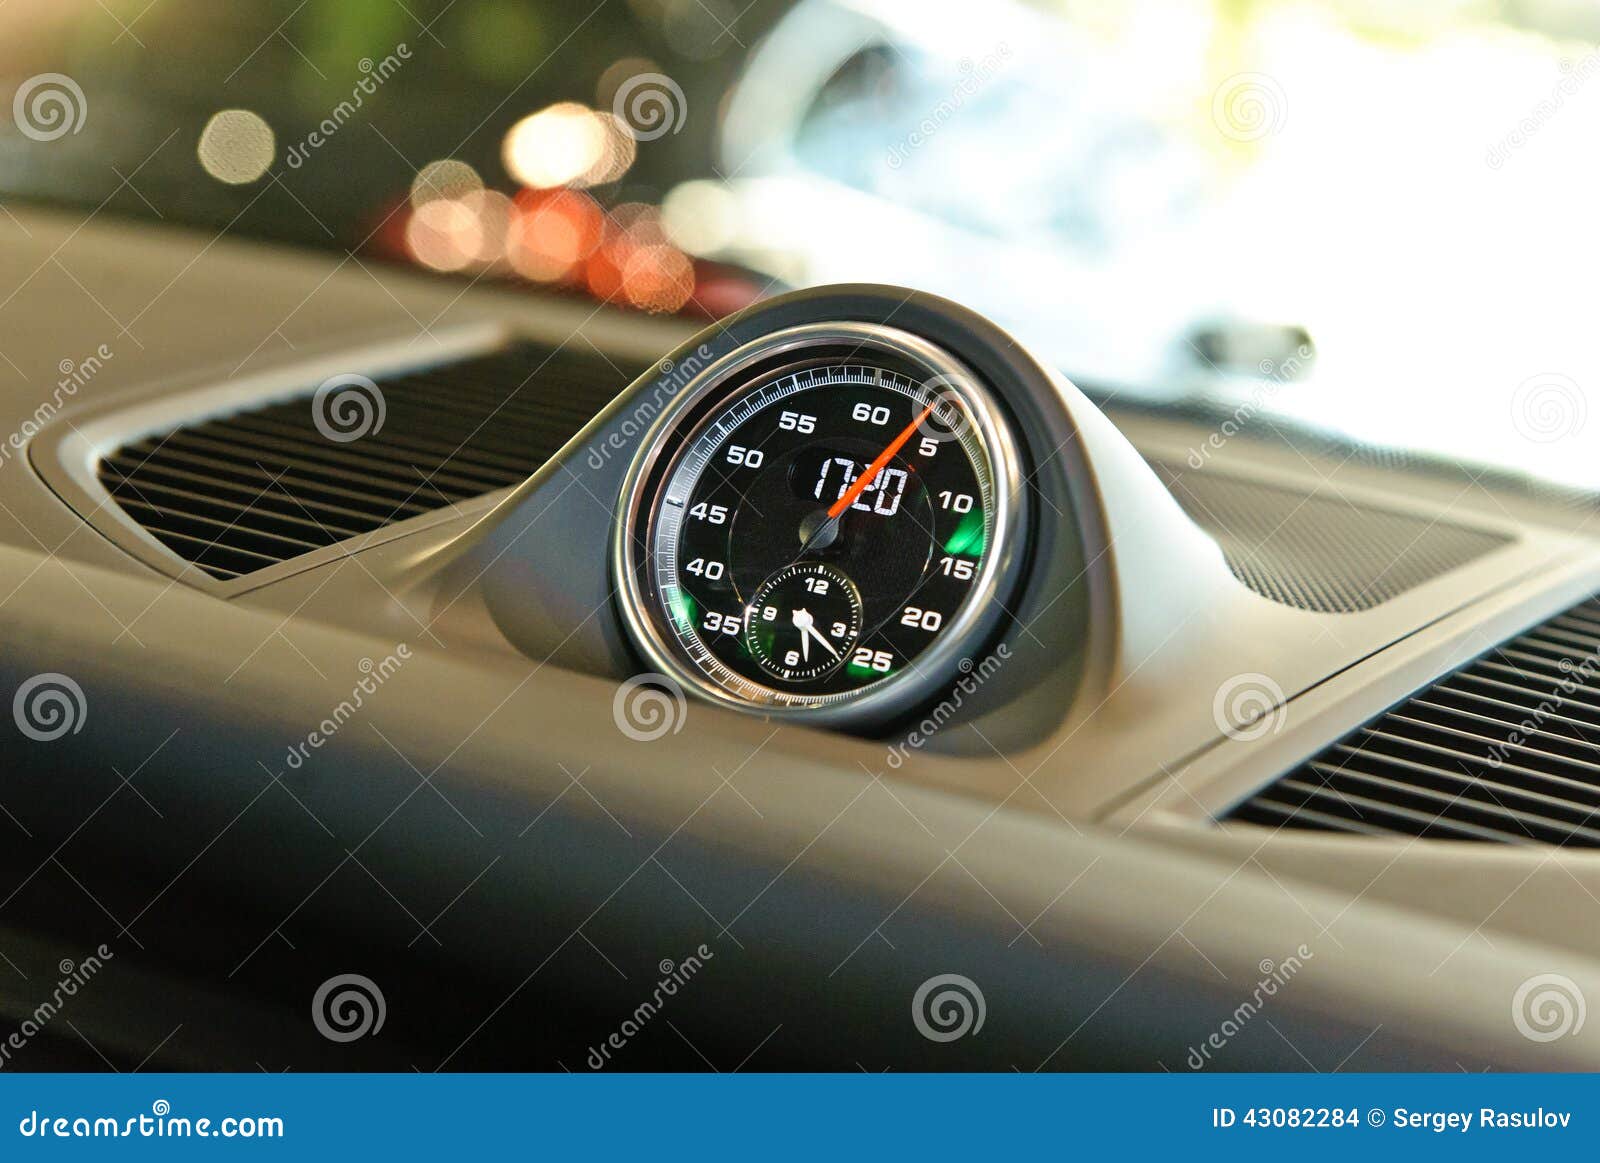 Horloge de voiture photo stock. Image du horloge, chiffre - 43082284